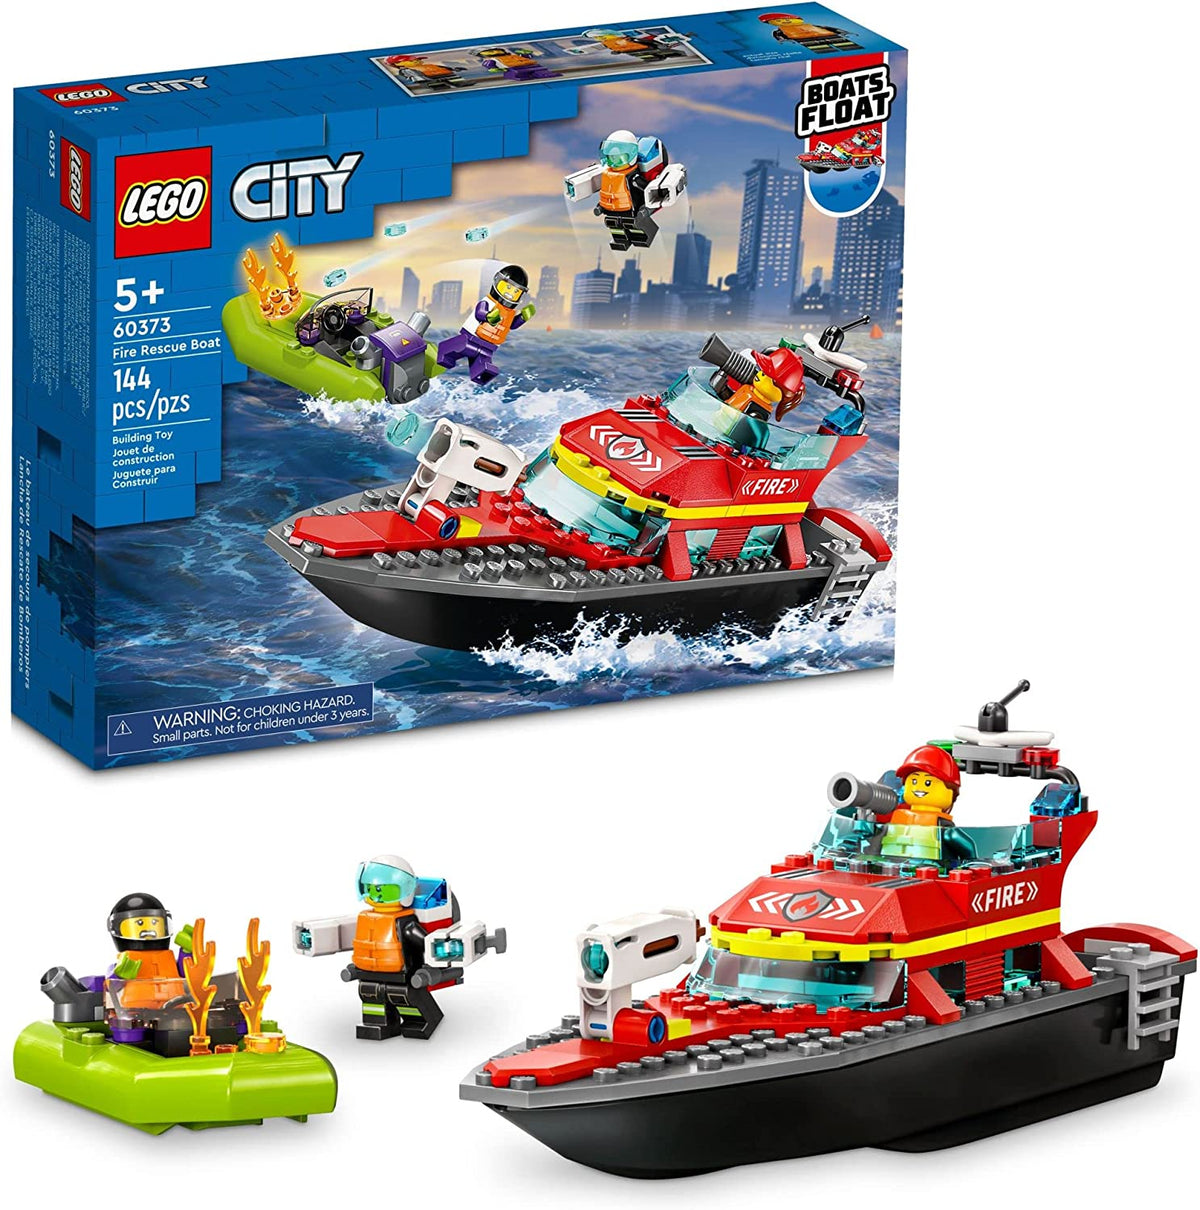 CITY 60373: Fire Rescue Boat